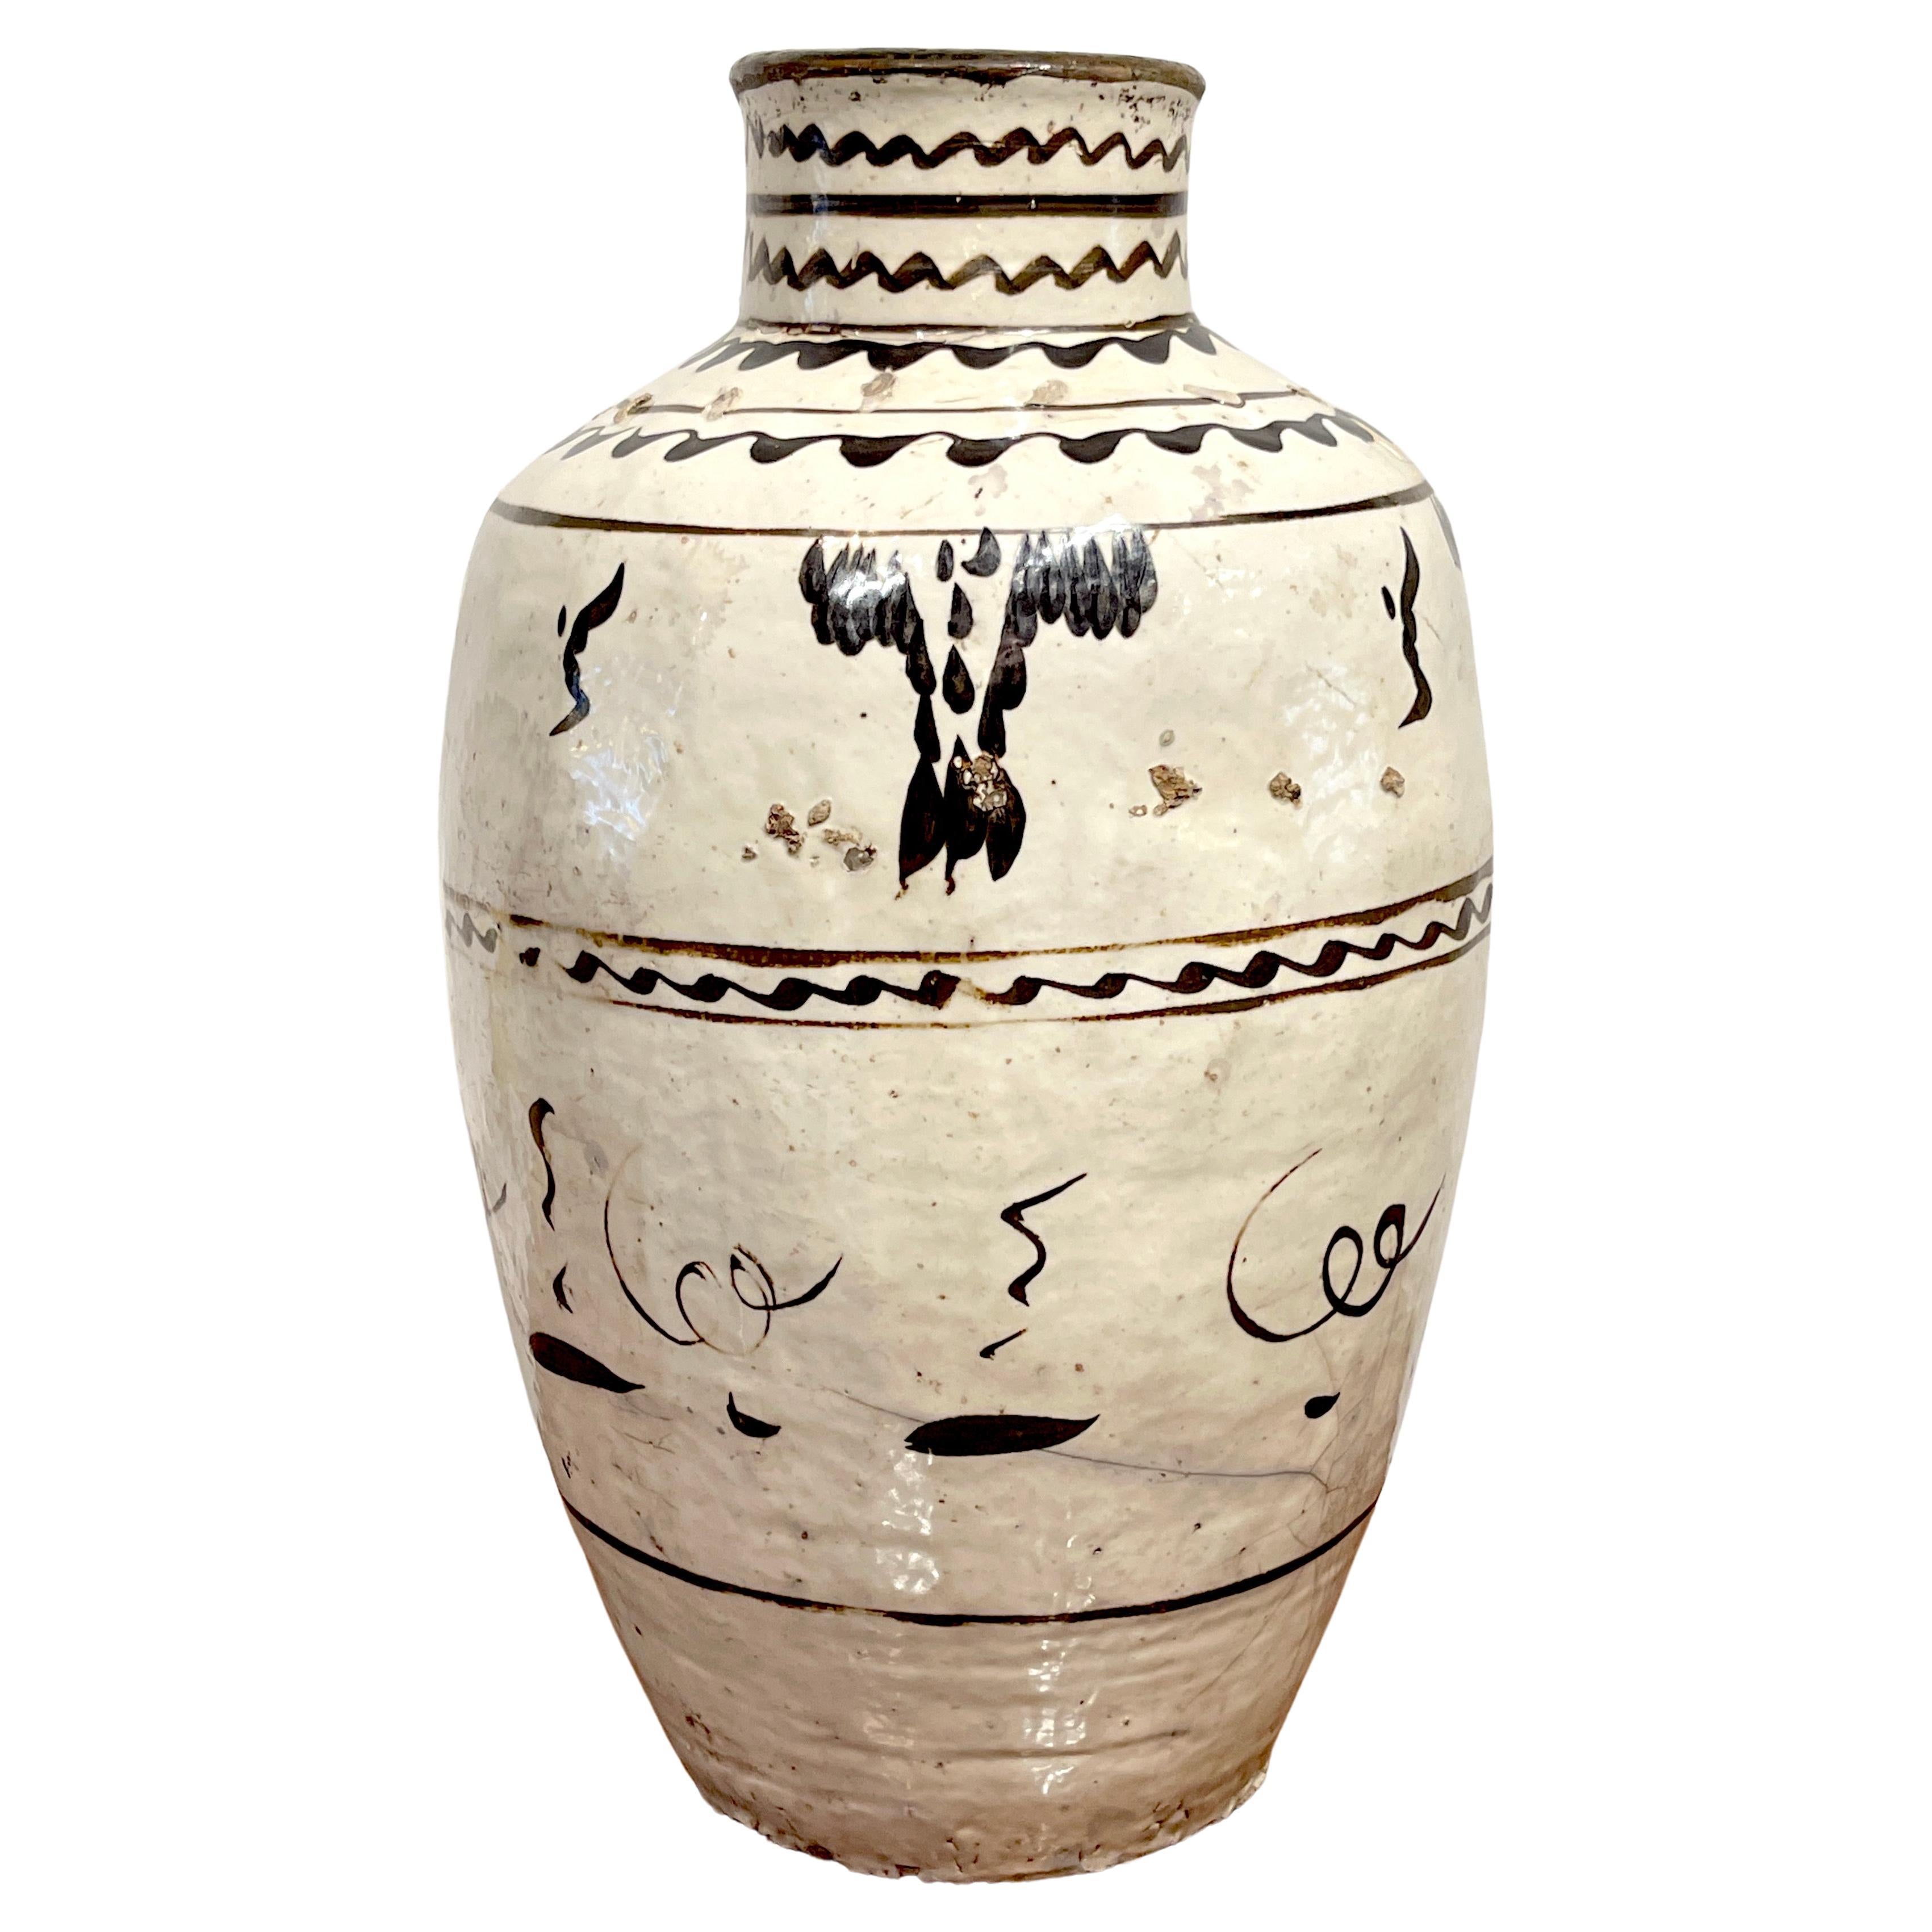 Ming Dynasty Cizhou Stoneware Vase #1